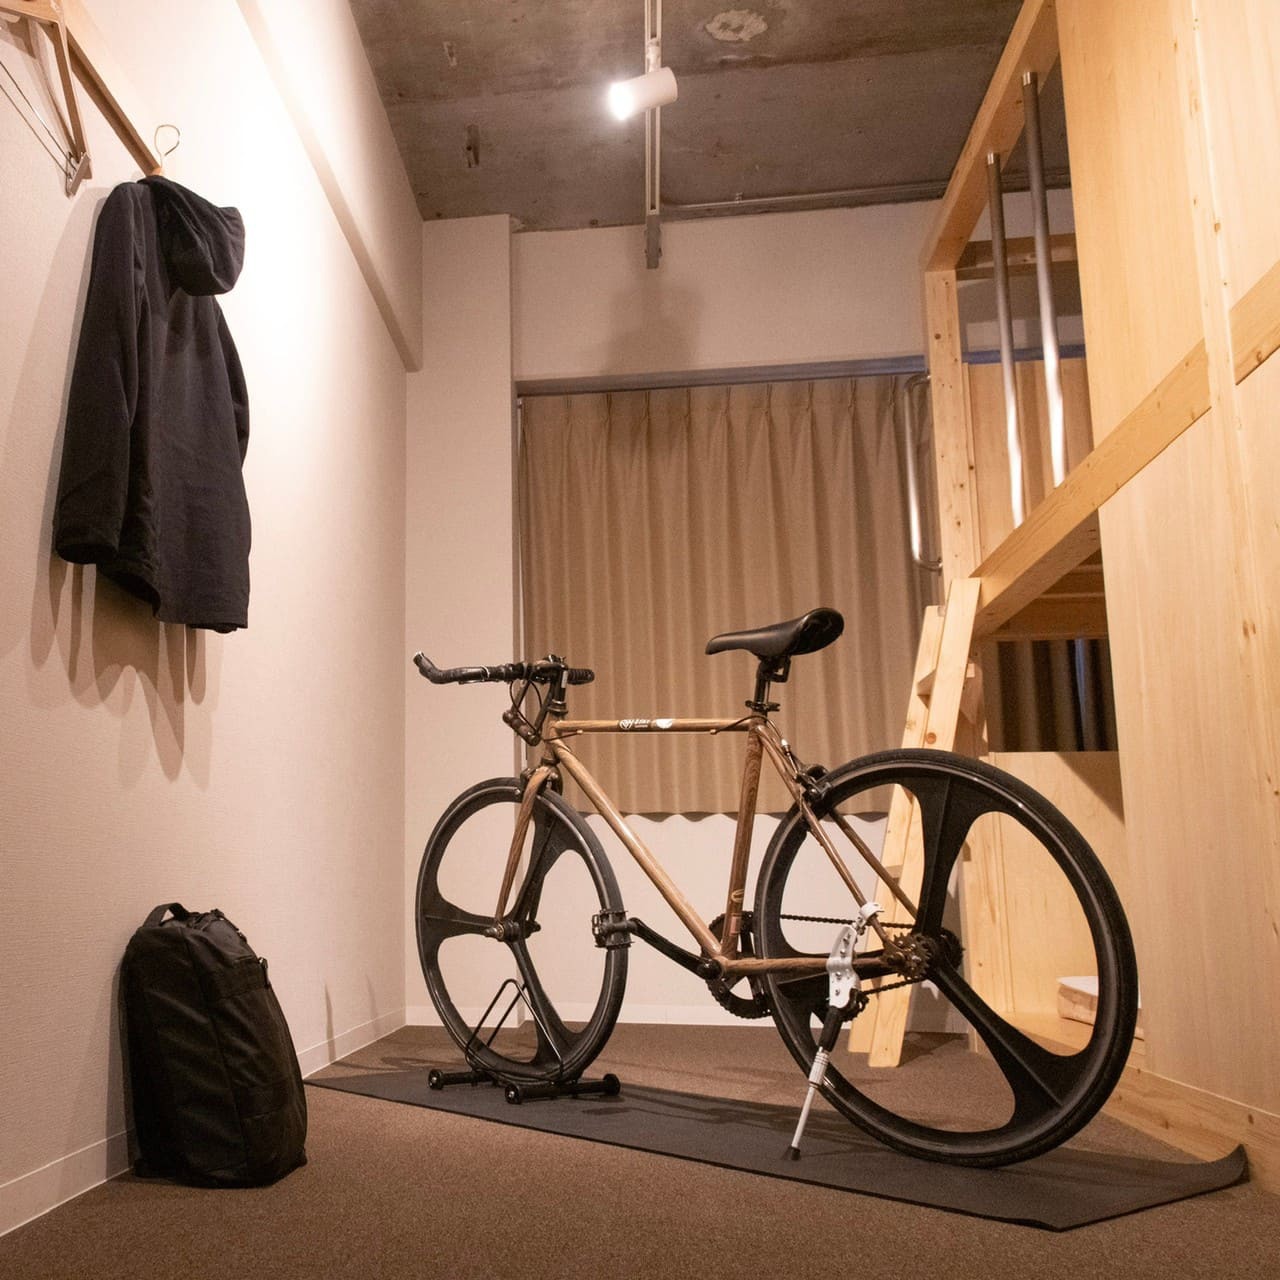 一部客室は客室内に自転車を入れることができます。